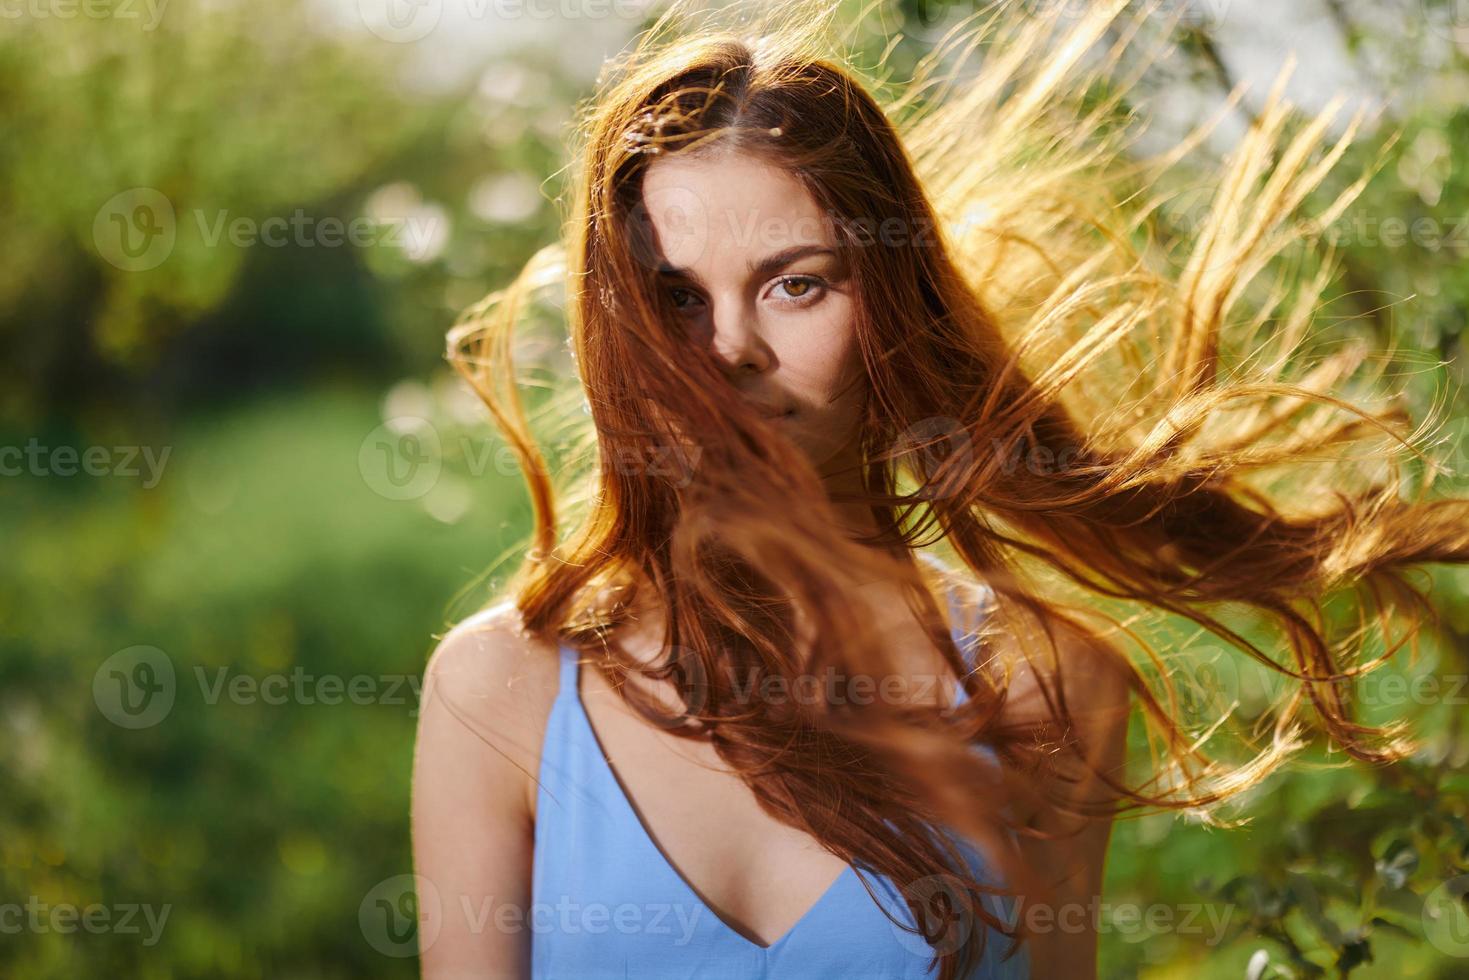 porträtt av en kvinna med lång flyg iväg hår röd hår i sommar, de begrepp av hälsa och vård för lång tjock hår skönhet foto